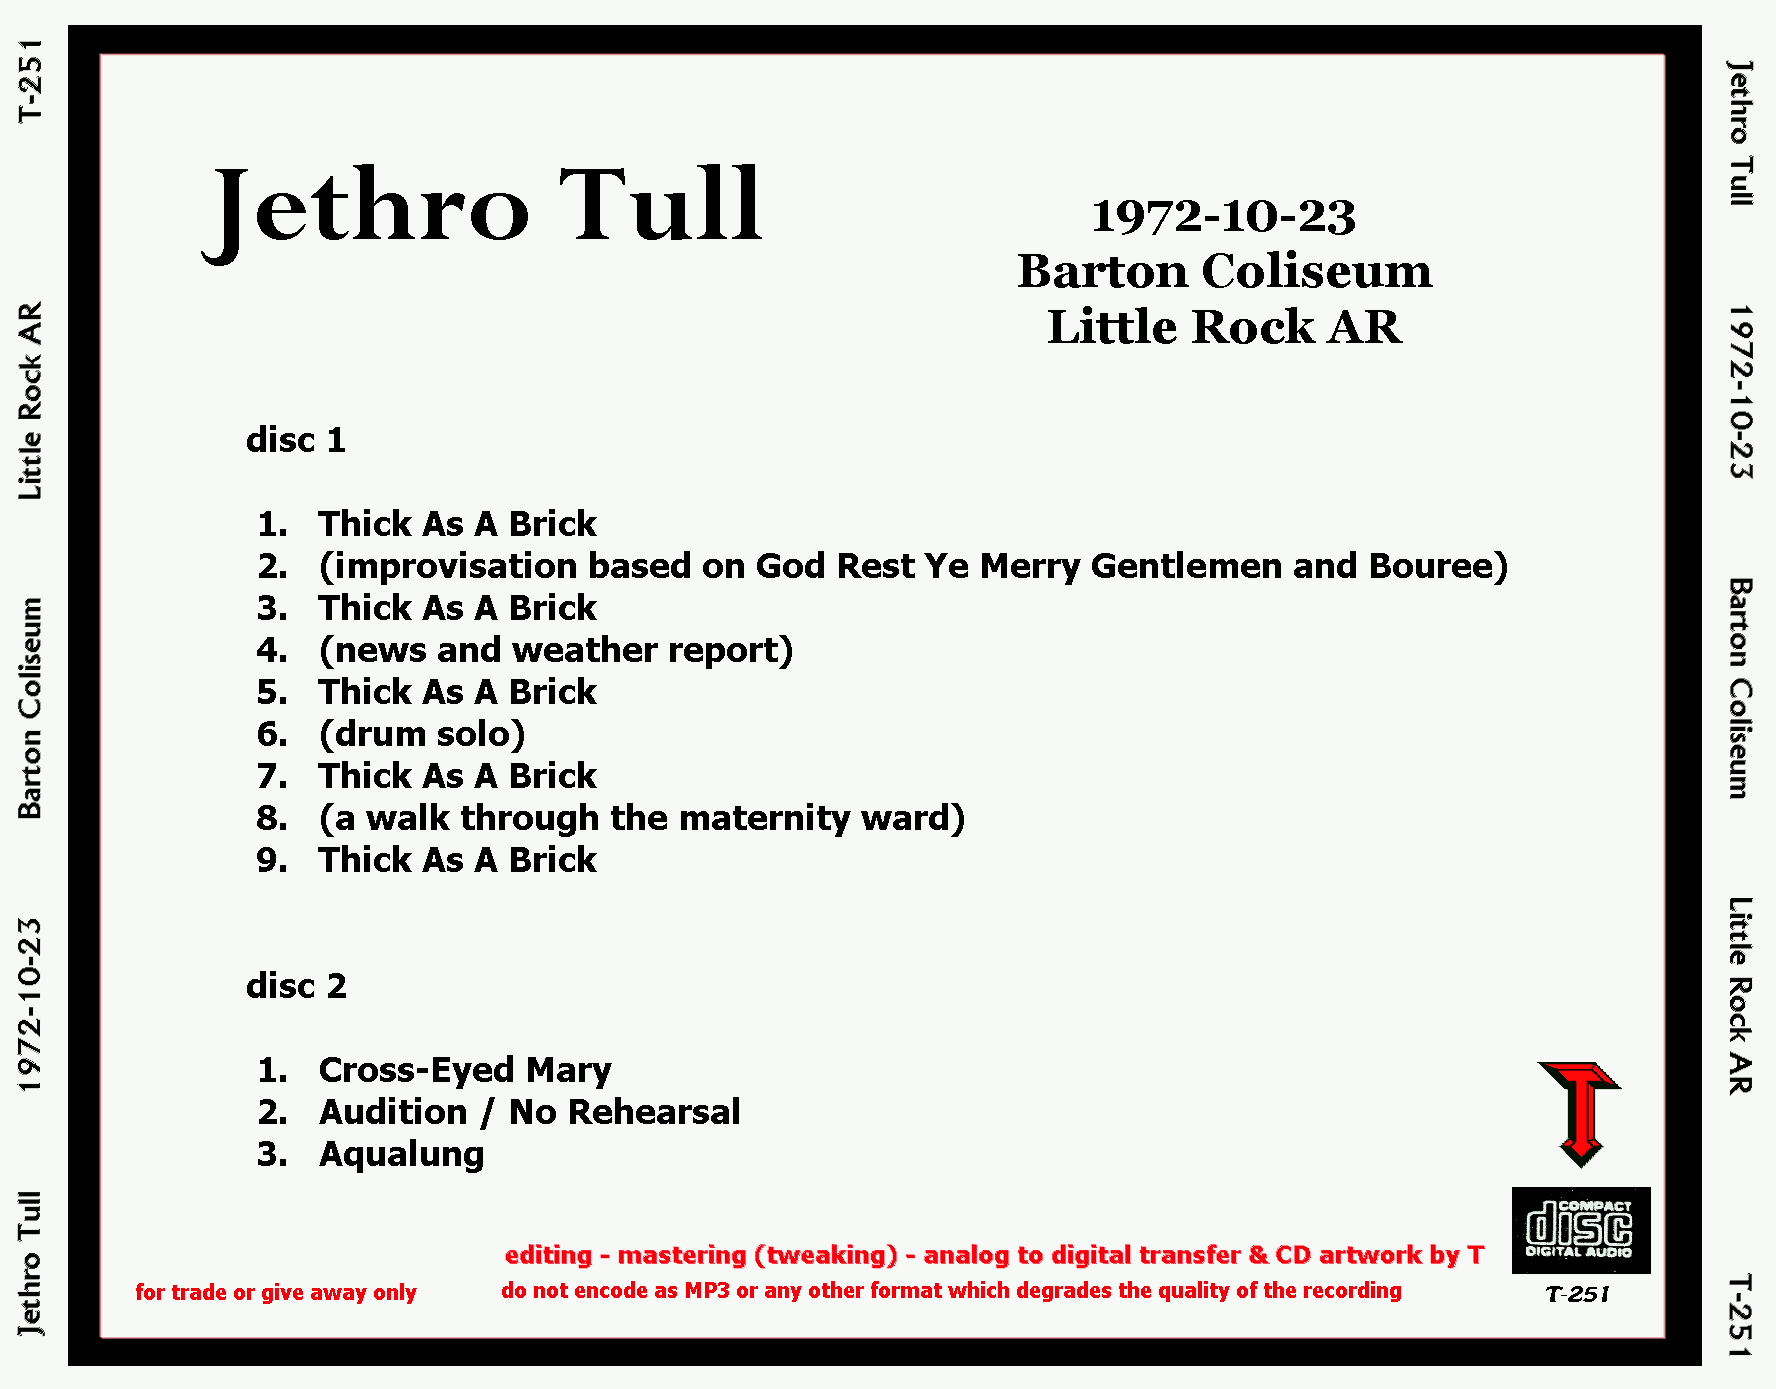 JethroTull1972-10-23BartonColiseumLittleRockAR (1).JPG